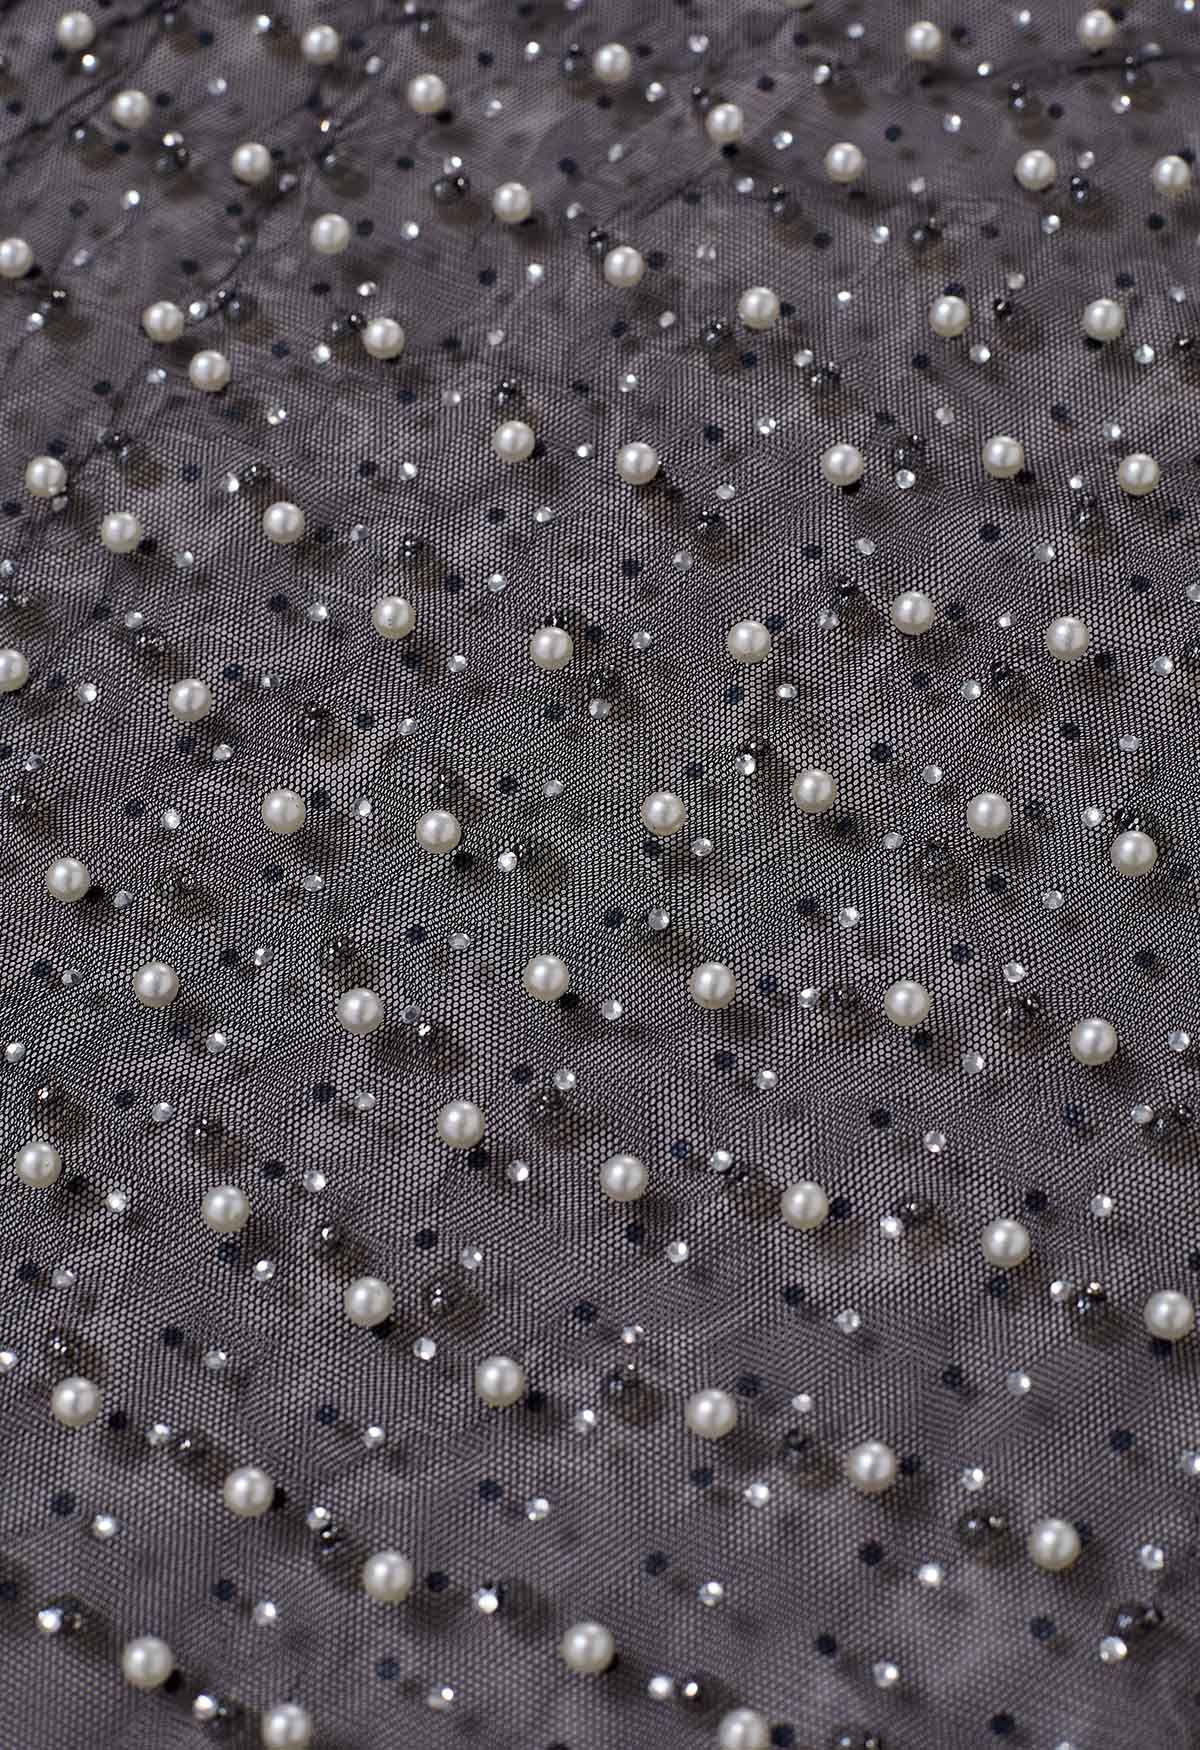 Vollständig mit Perlen verziertes, durchsichtiges Netzoberteil in Schwarz